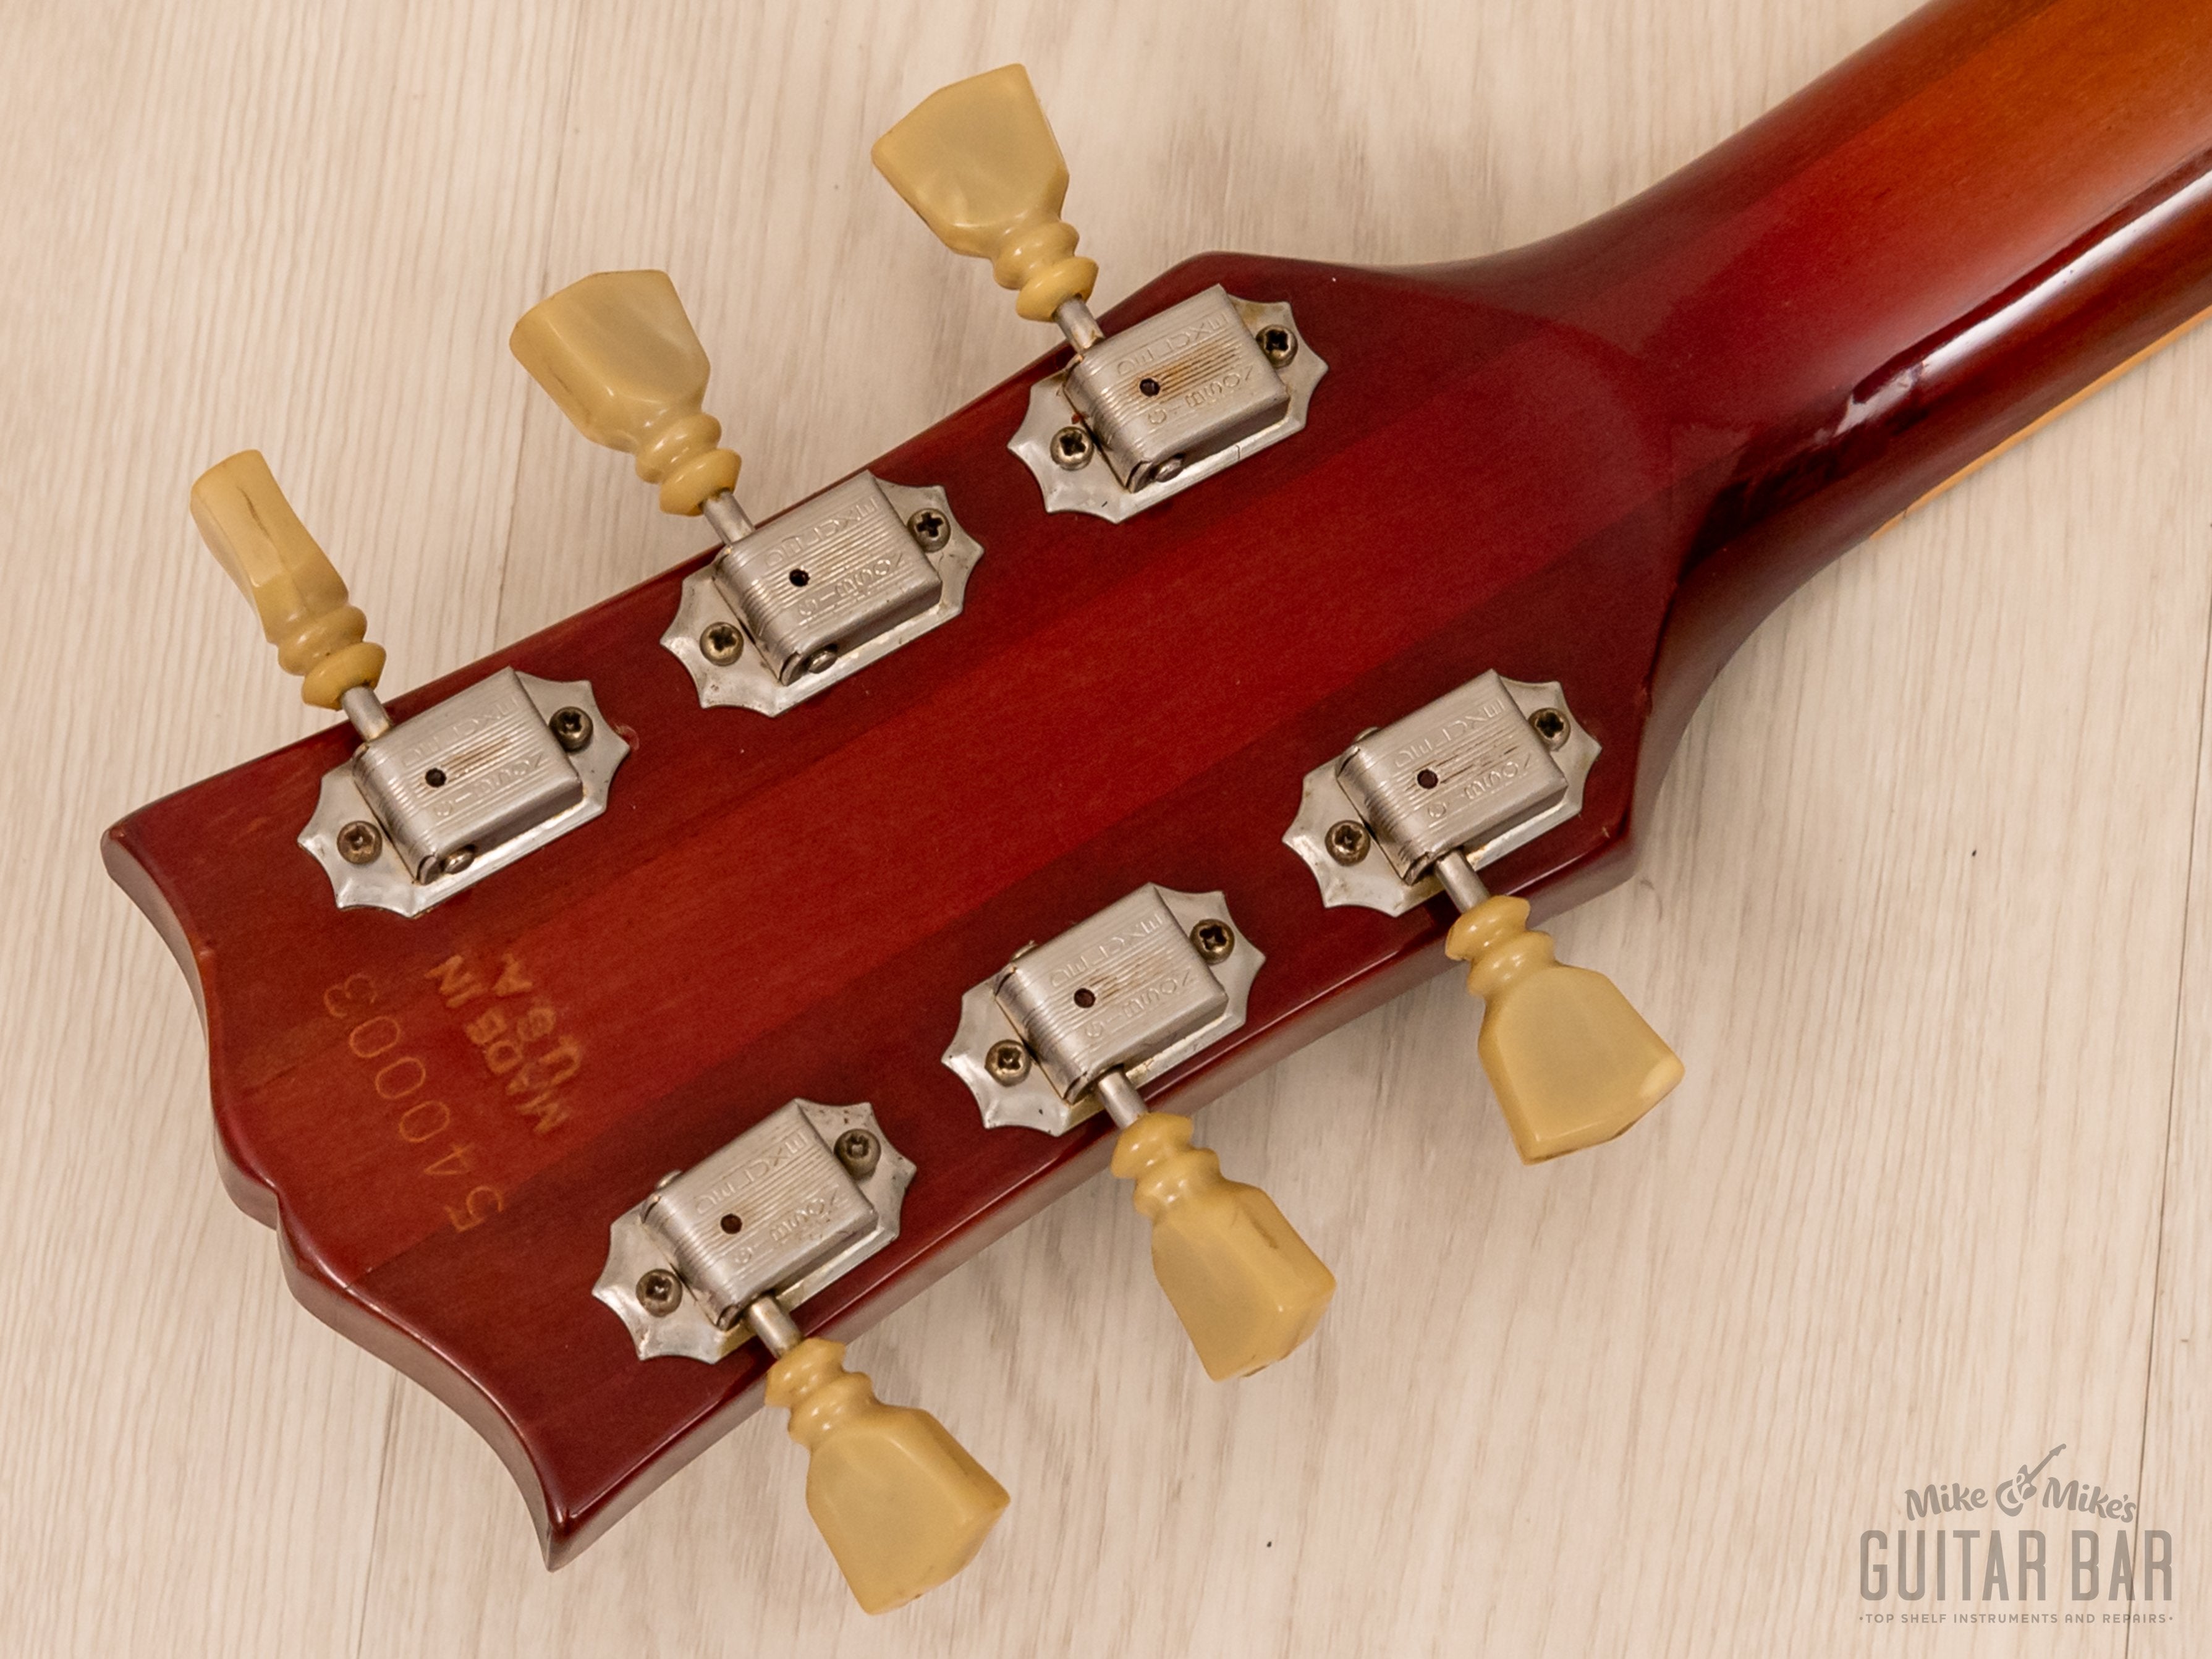 1974 Gibson Les Paul Deluxe Vintage Guitar Cherry Sunburst w/ Case